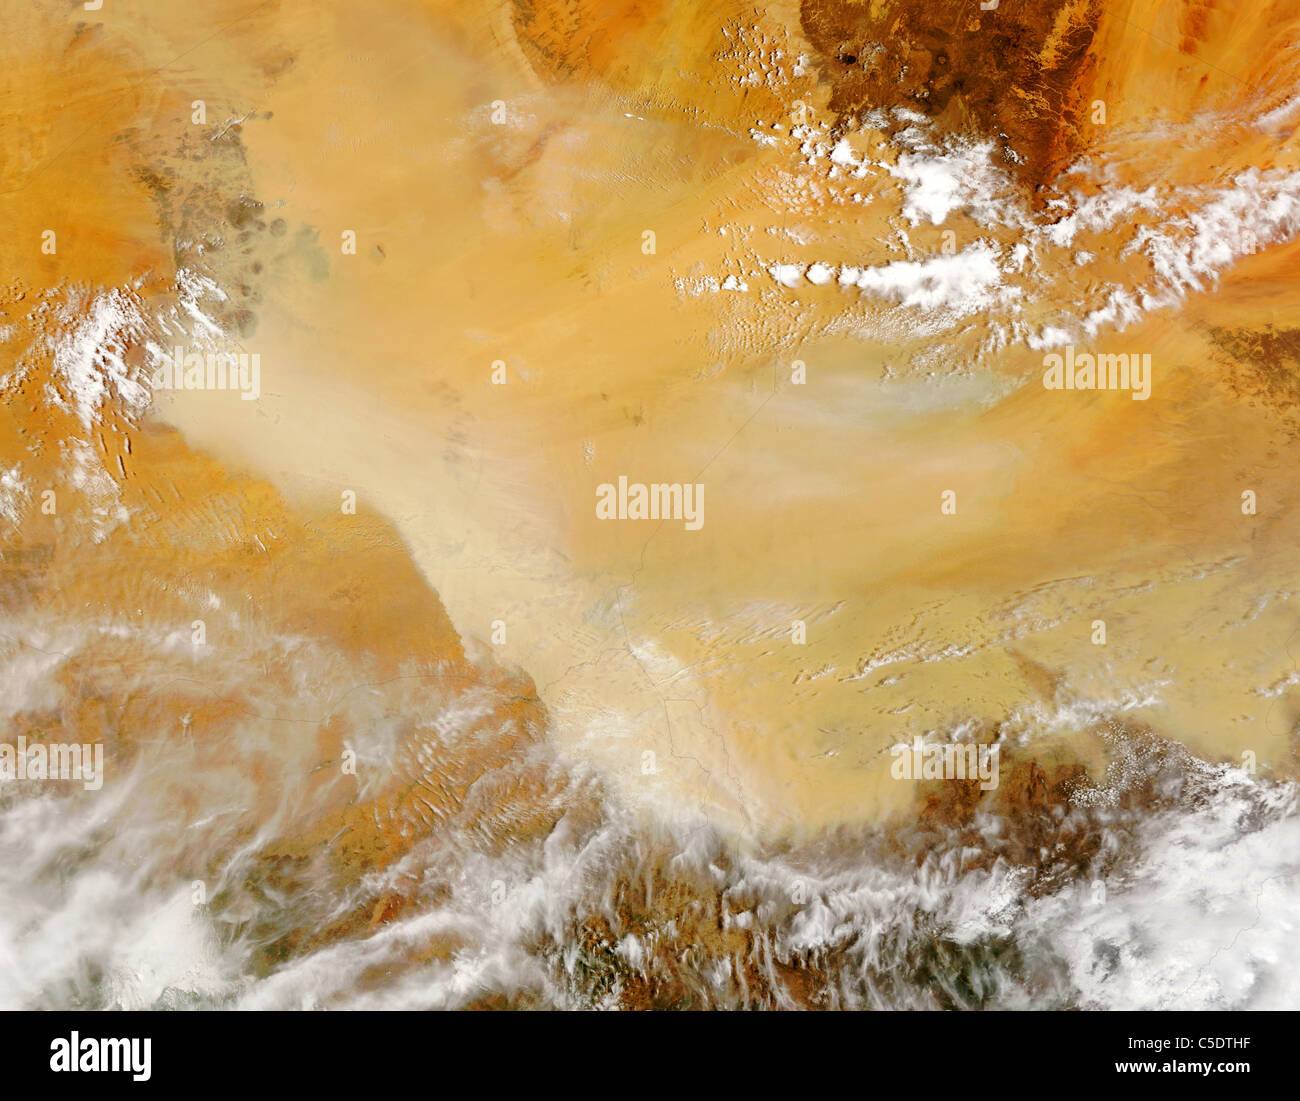 Dust storm in the sahara desert - satellite image Stock Photo